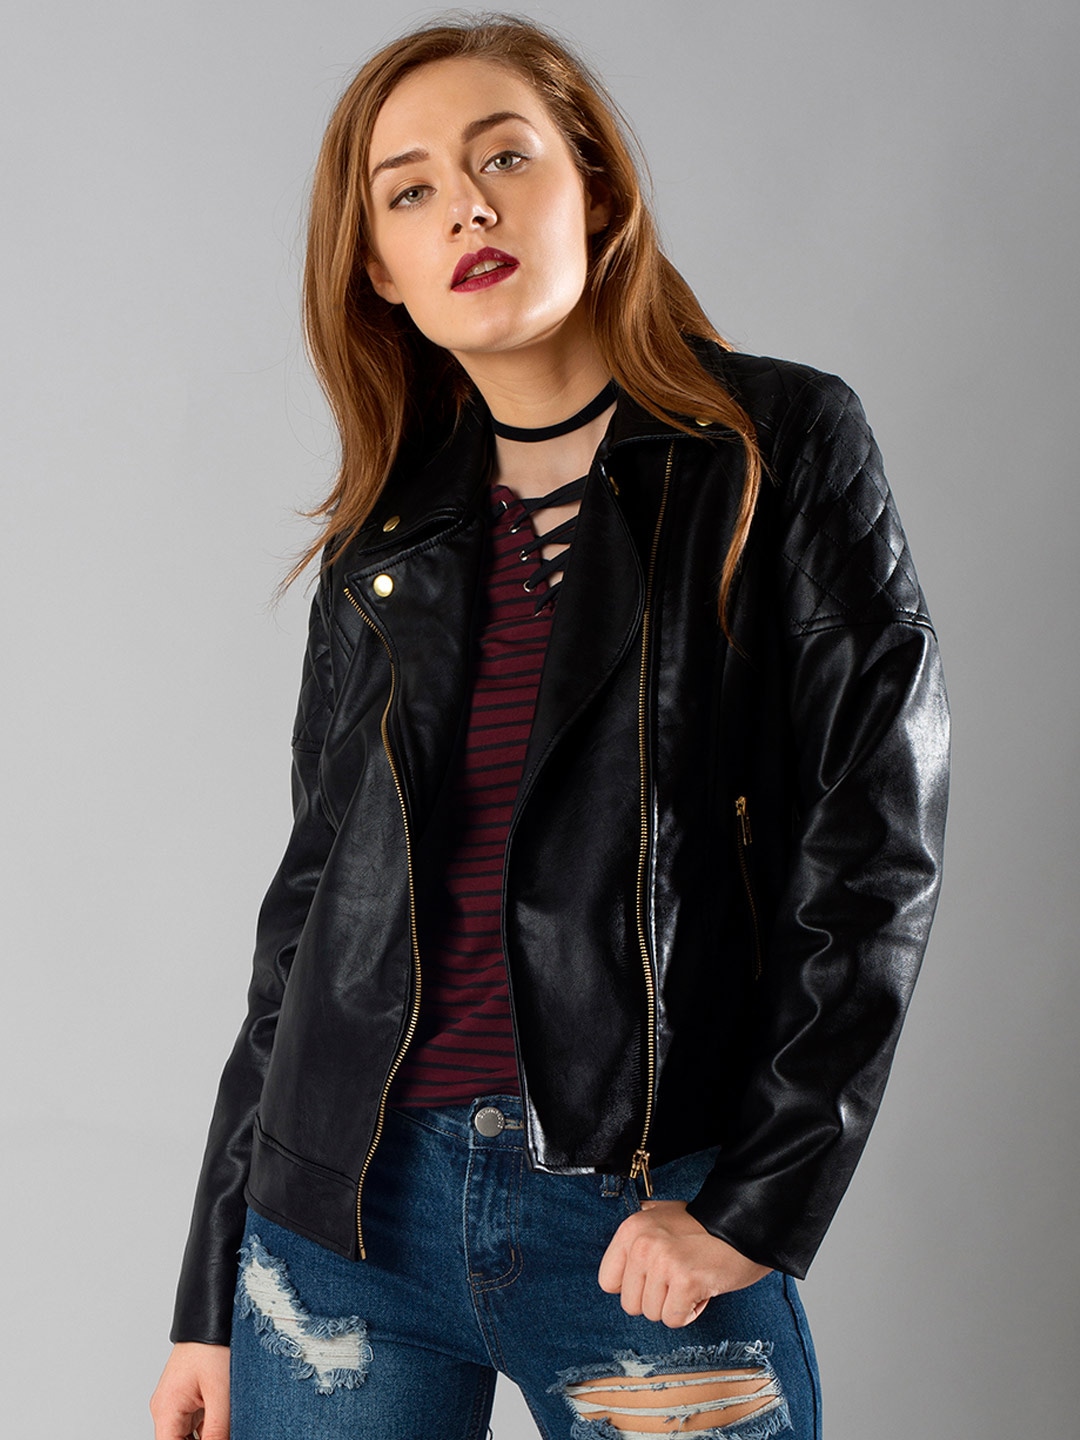 Buy womens leather jacket online india – Modern fashion jacket ...